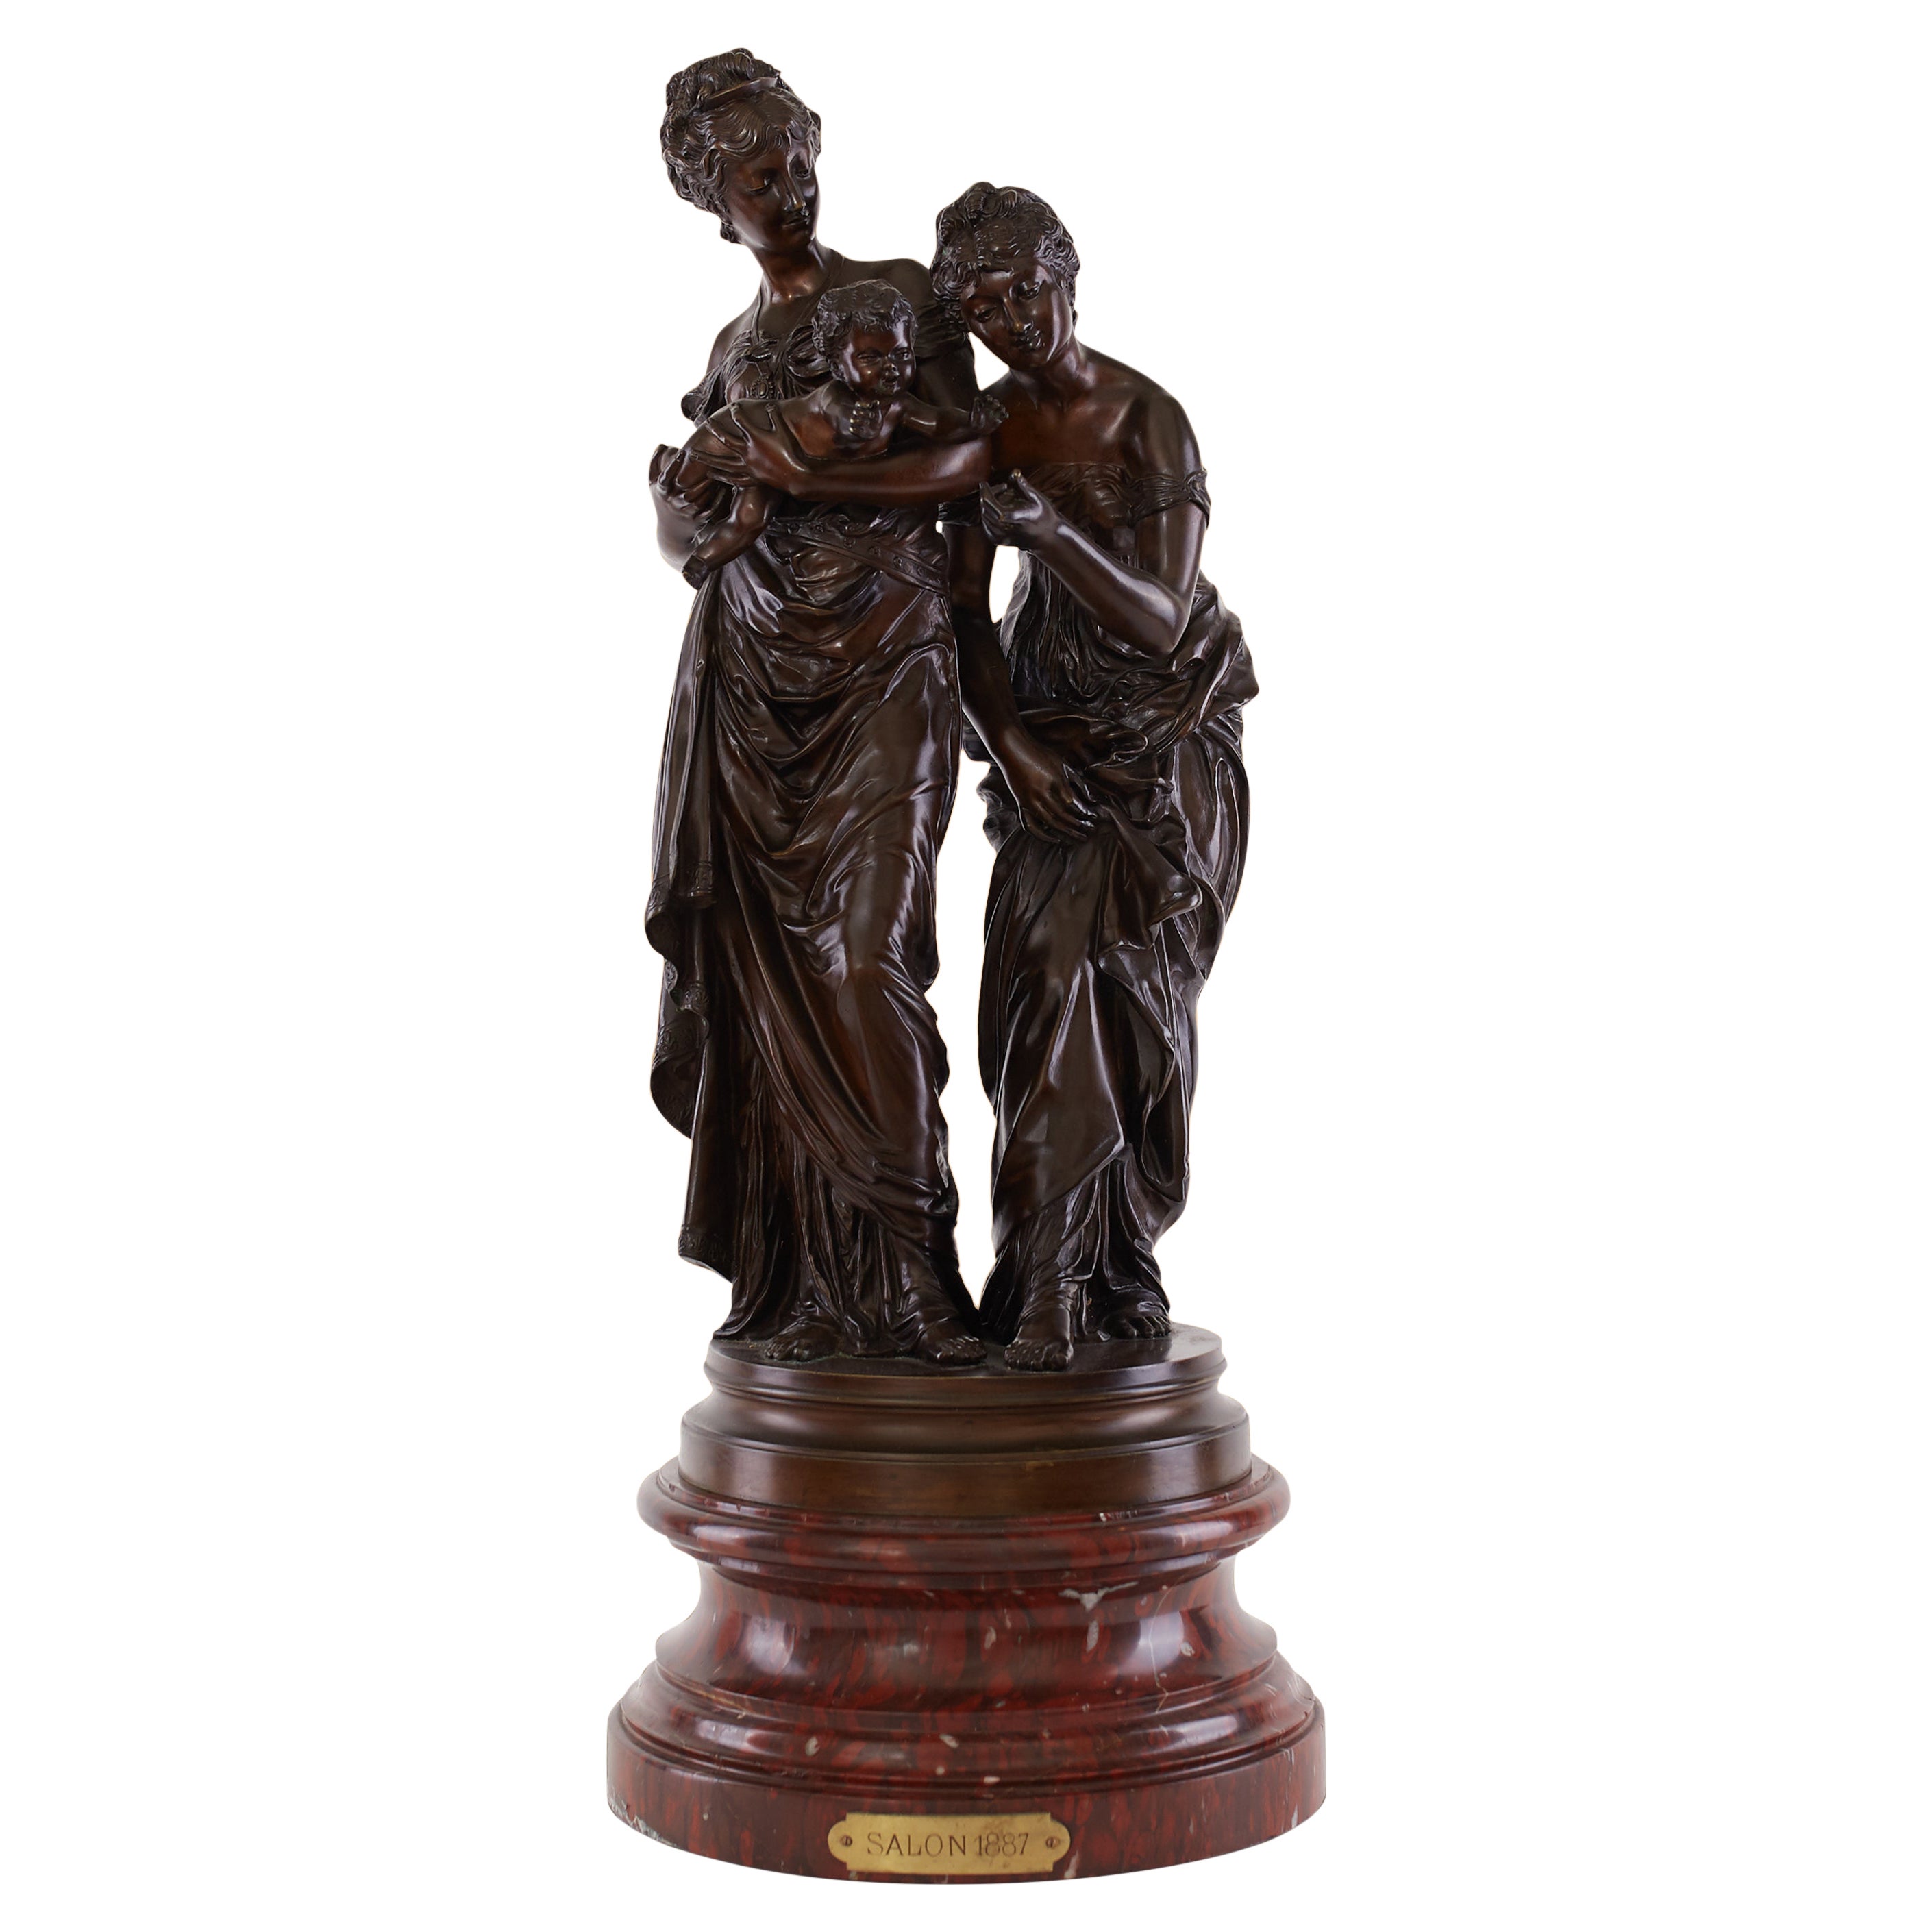 Sculpture en bronze datant d'environ 19ème siècle, 1887 par Salon